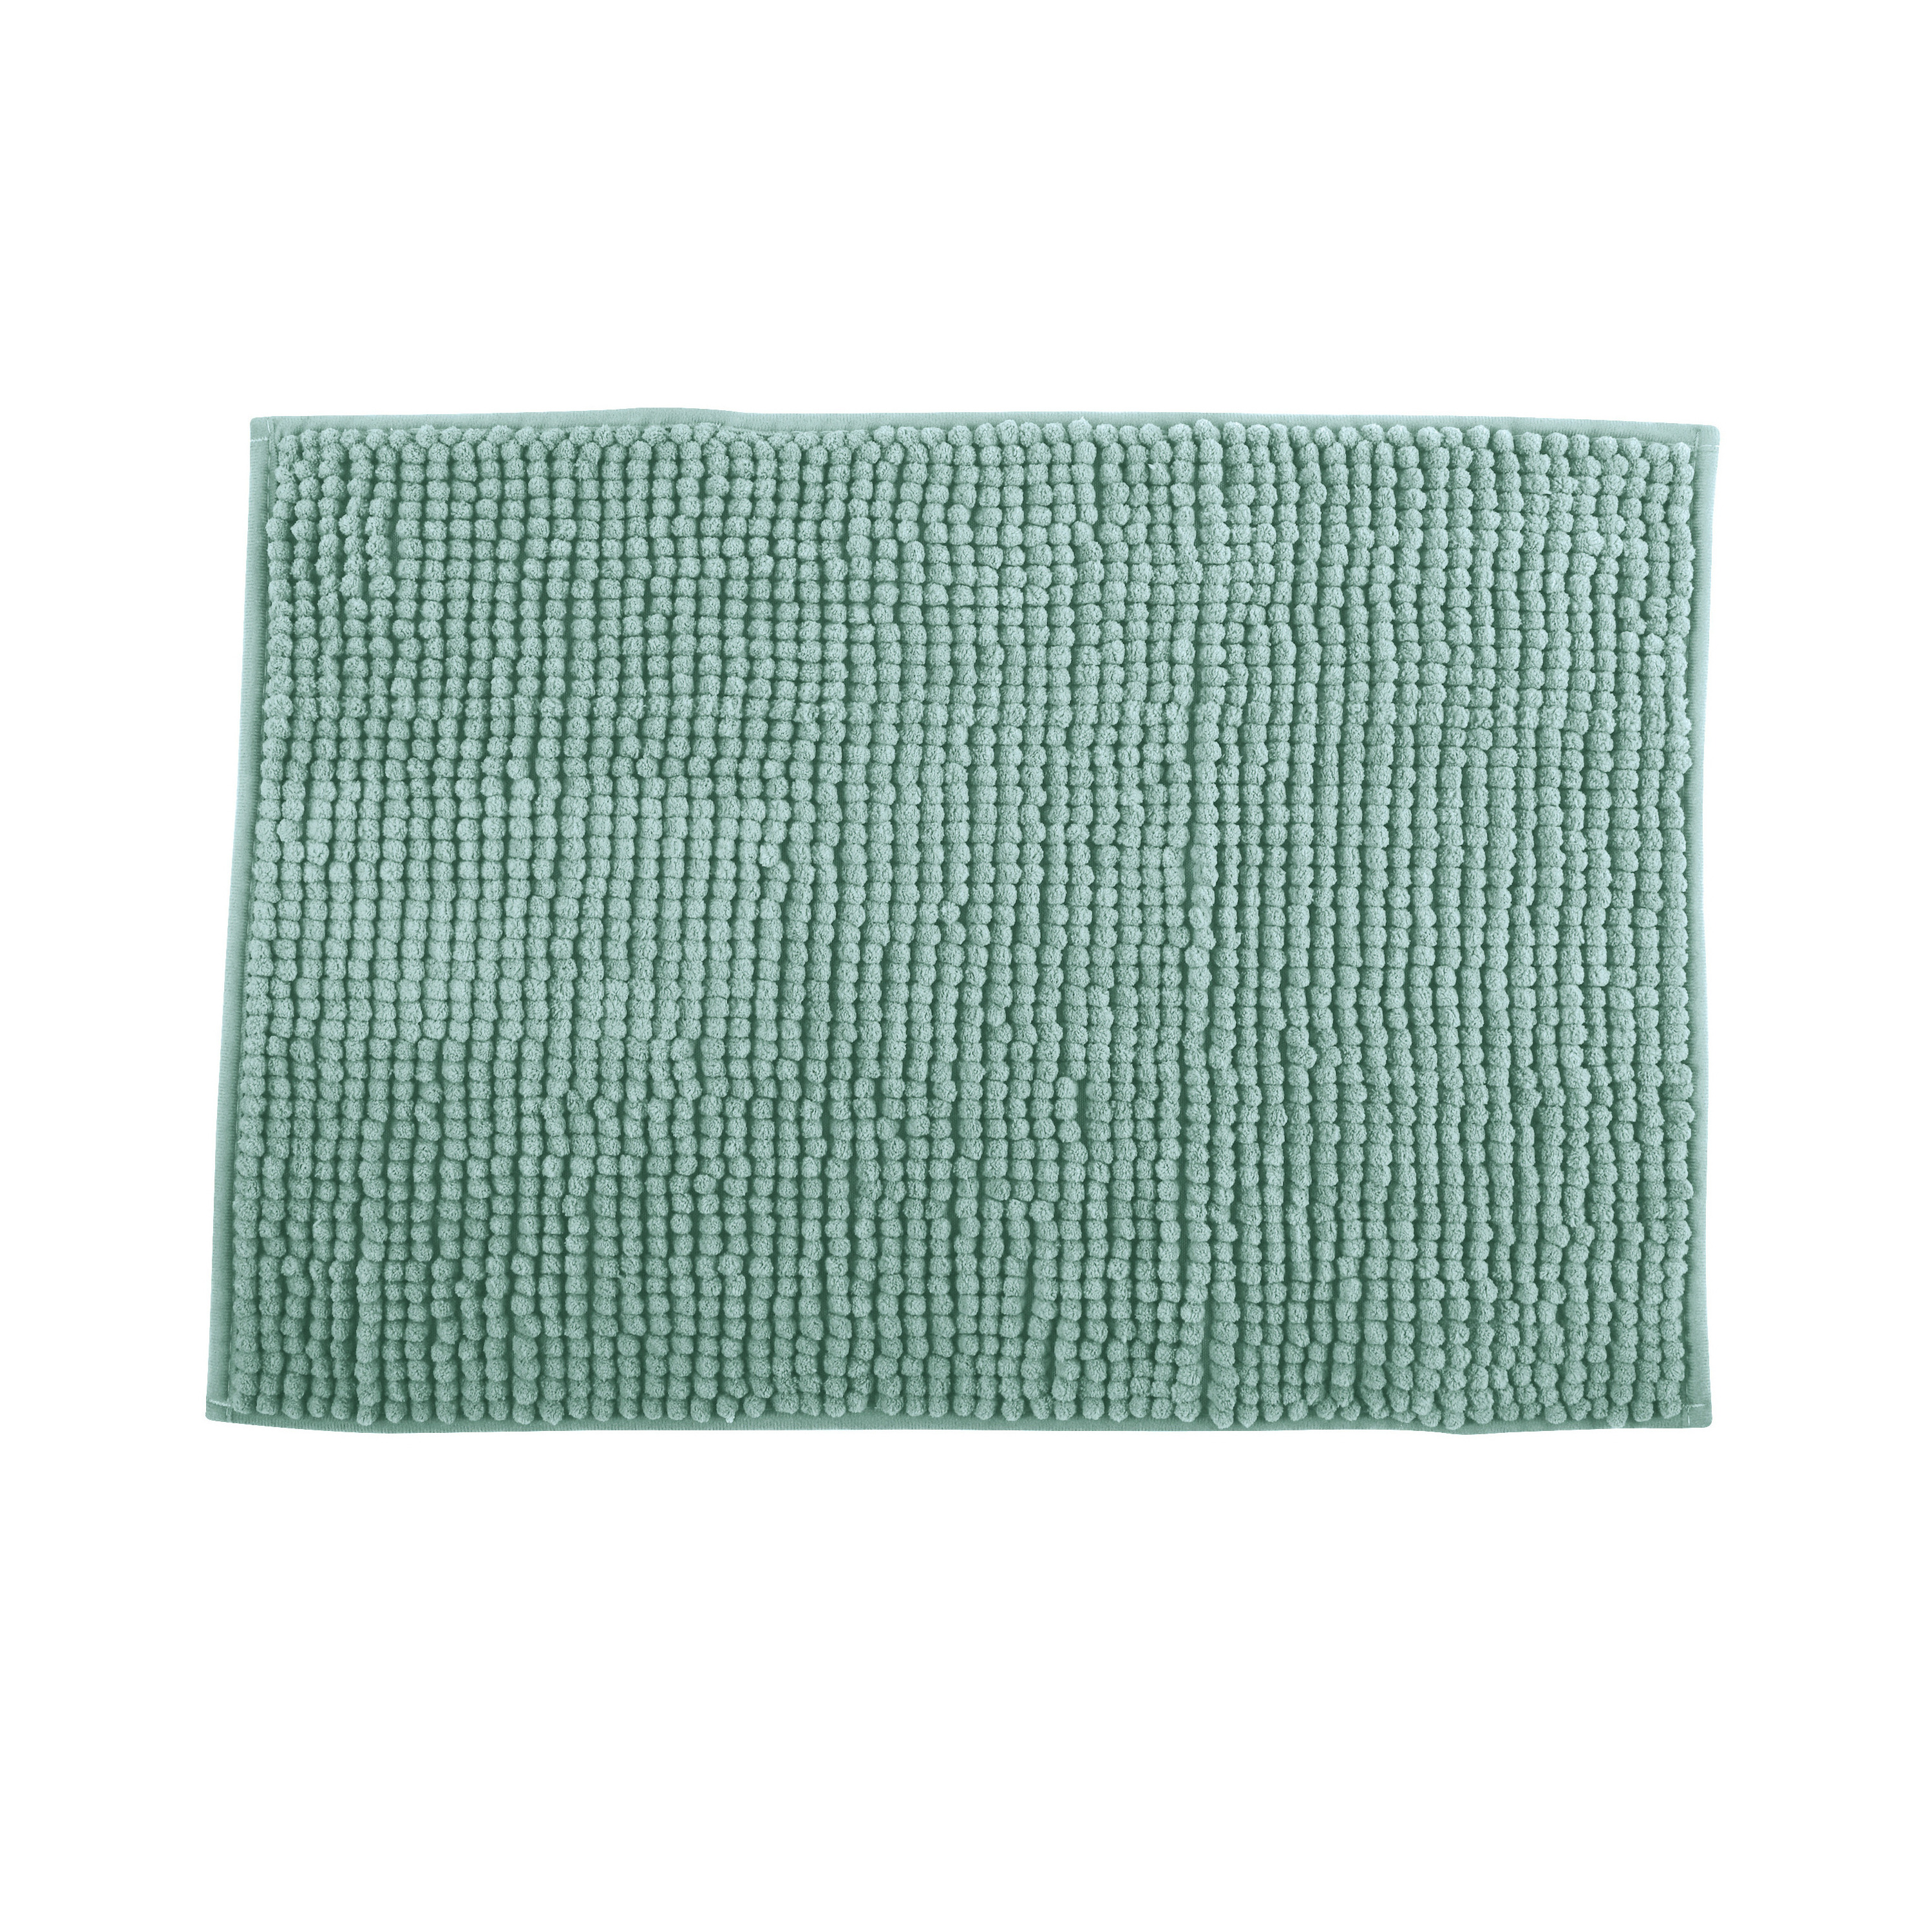 Badkamerkleedje-badmat tapijt kleedje voor op de vloer lichtgroen 60 x 90 cm